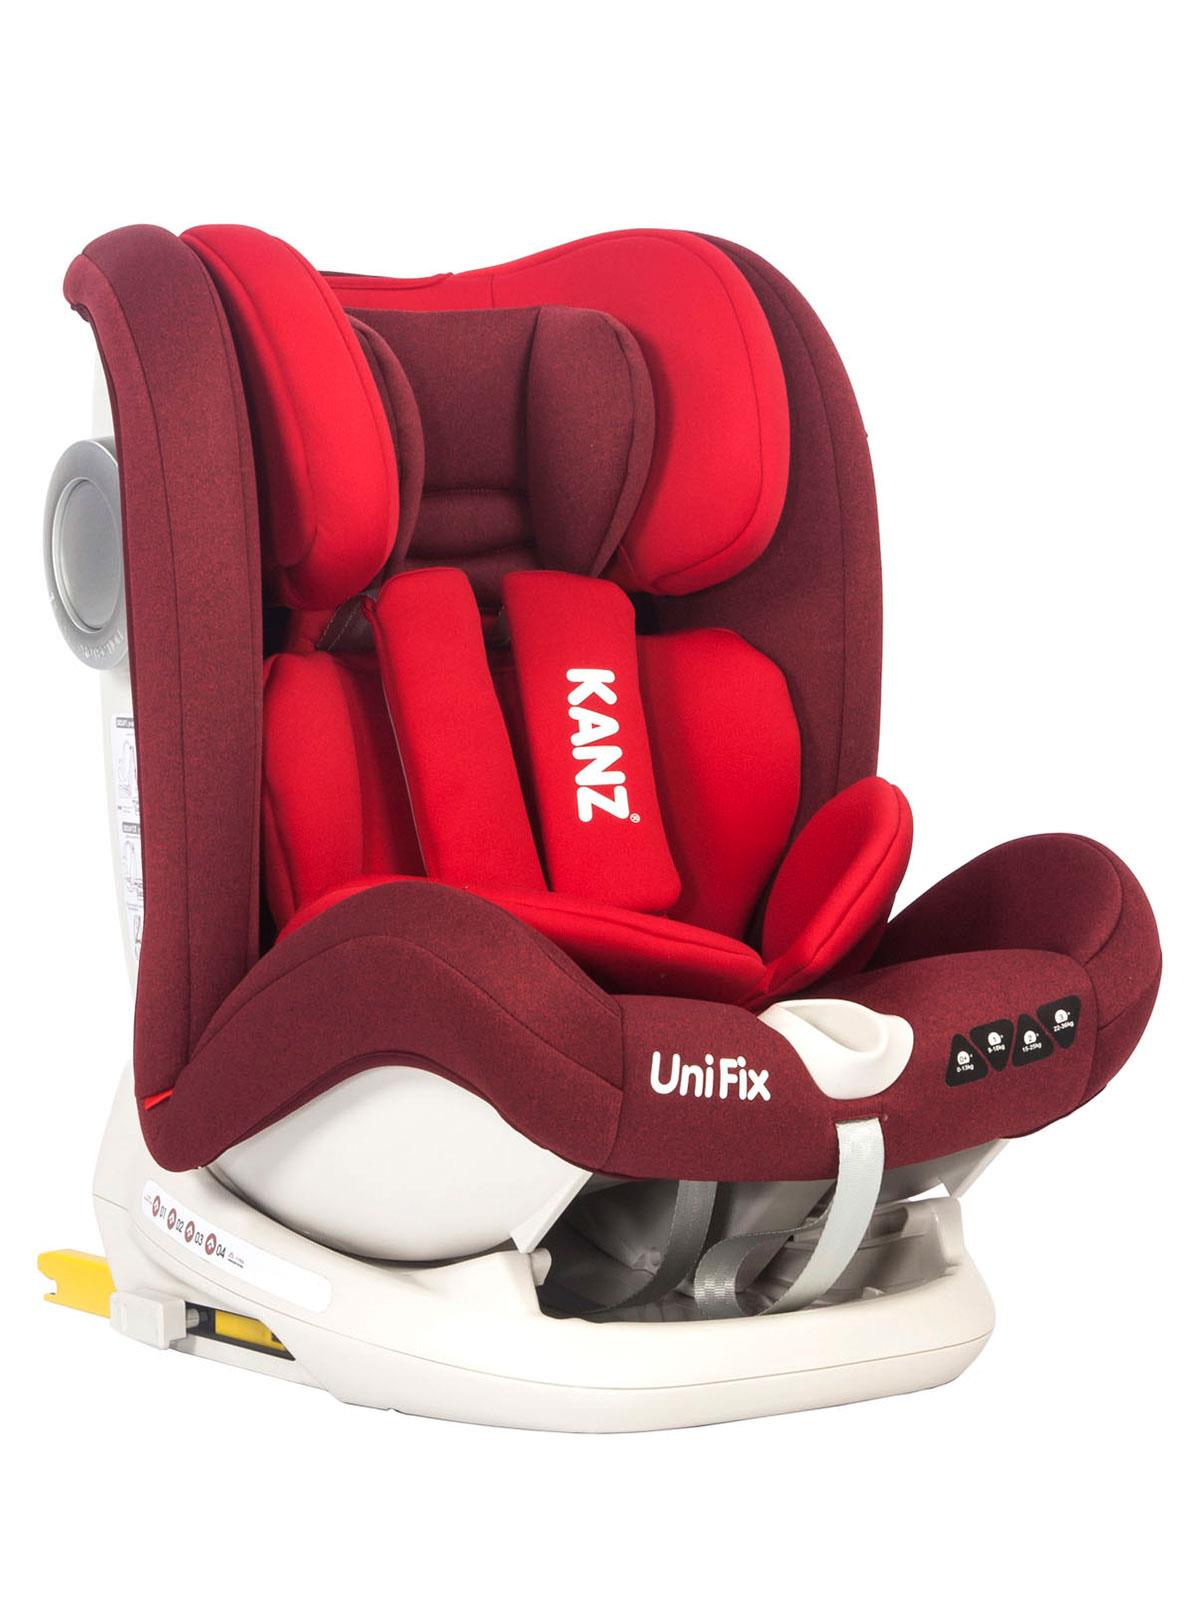 Kanz UniFix Car Seat Bordeaux